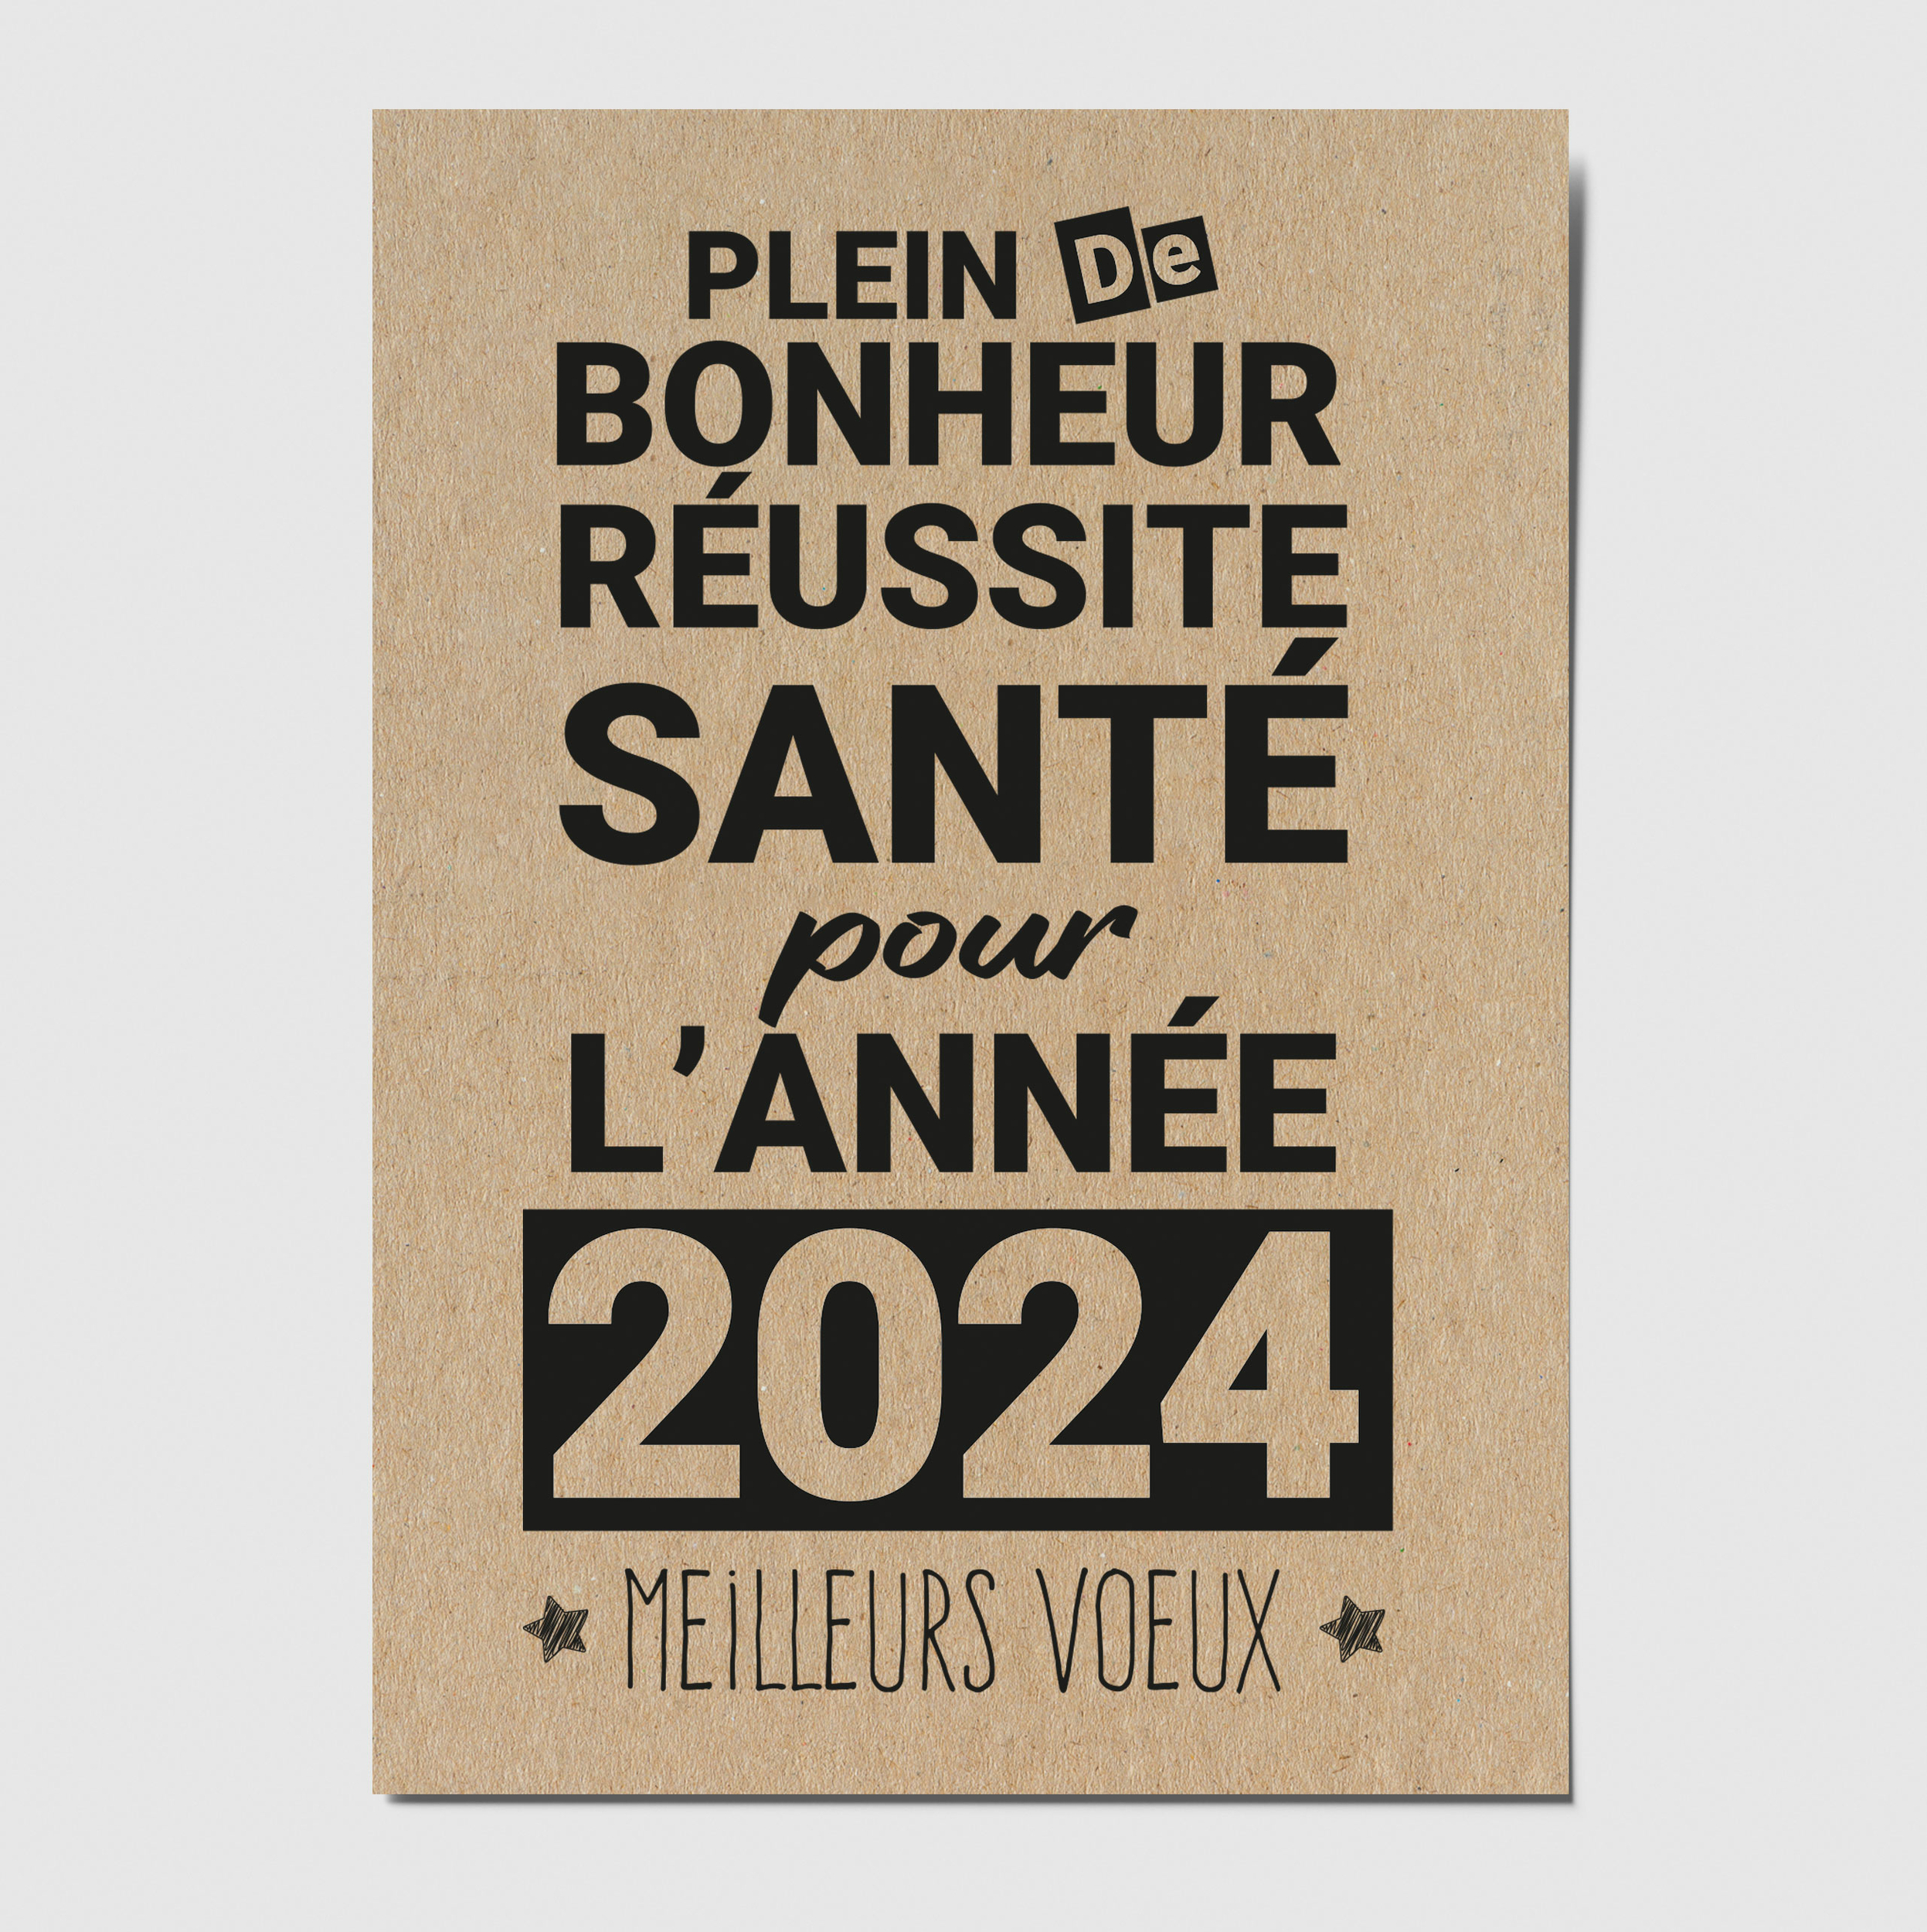 Bonne année 2024 ! –